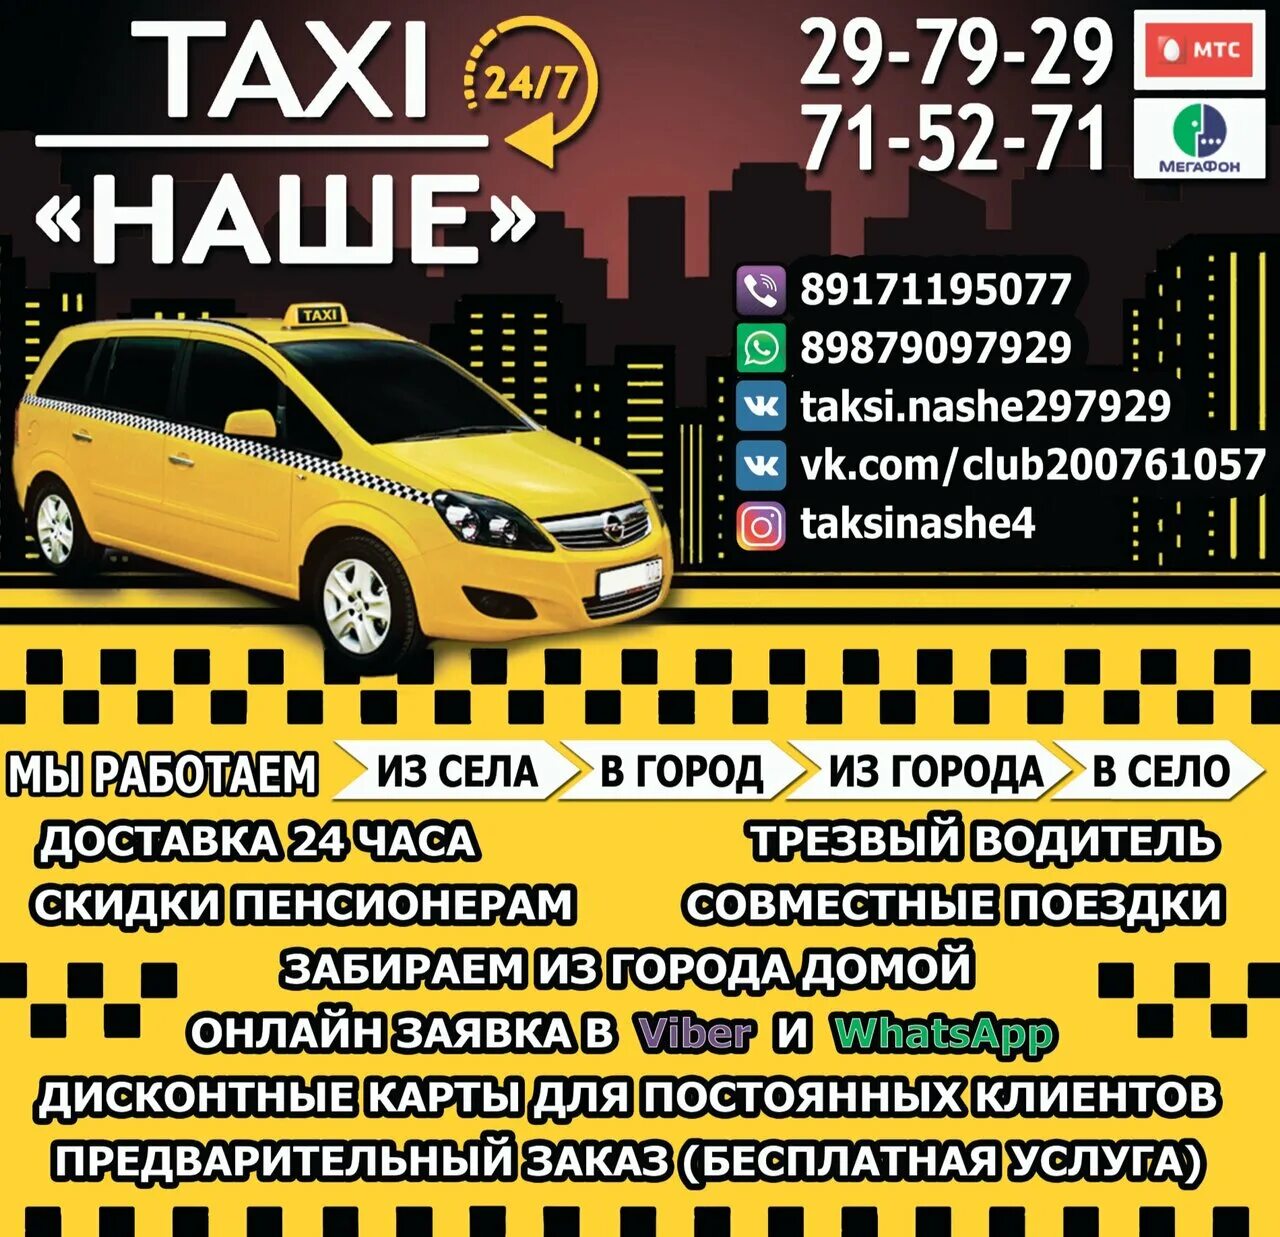 Сколько стоит такси до самары. Наше такси. Номер местного такси. Наше такси номер. Местное такси.